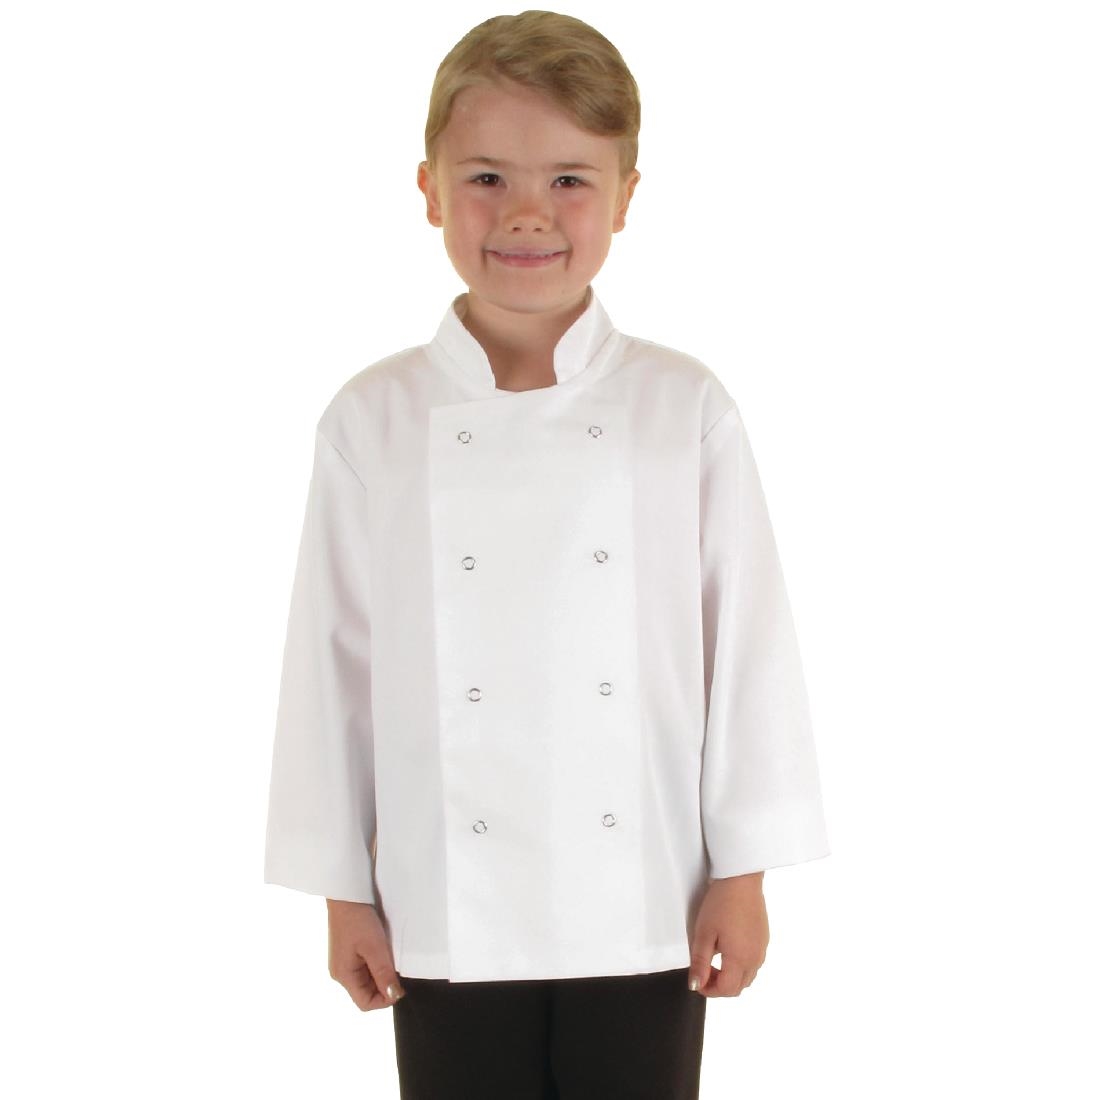 Whites Childrens Unisex Chef Jacket White L